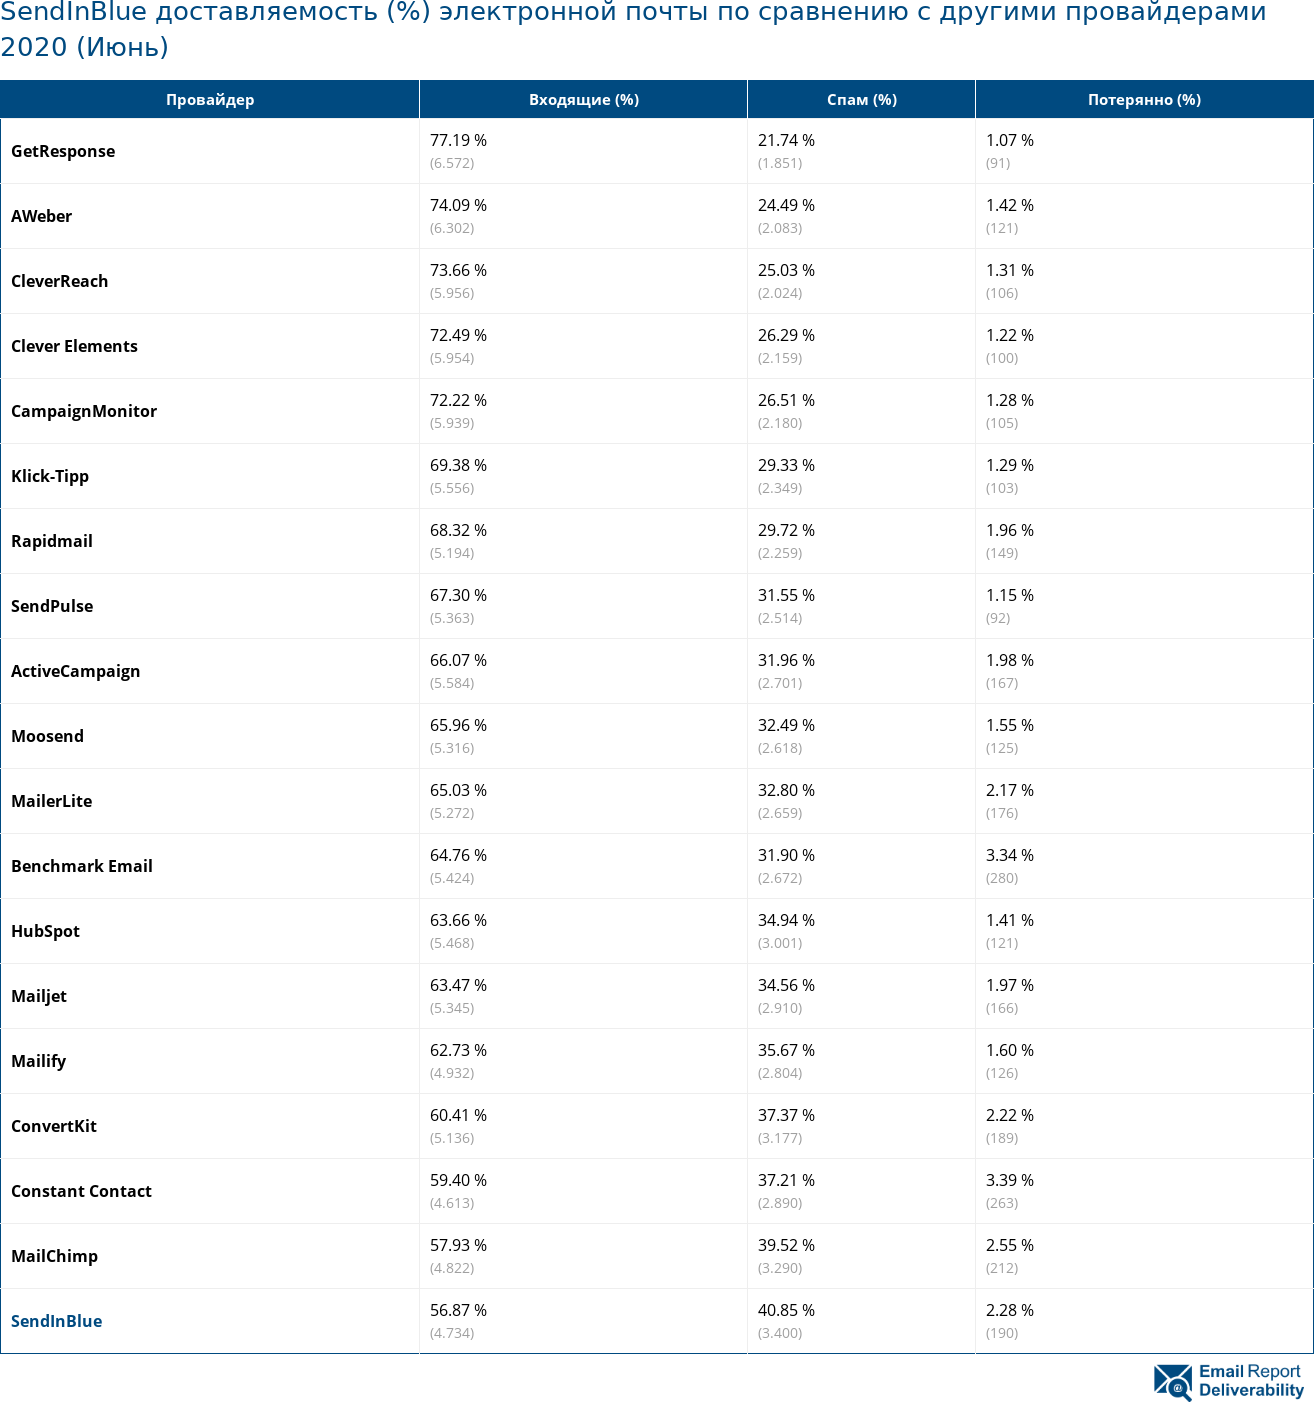 SendInBlue доставляемость (%) электронной почты по сравнению с другими провайдерами 2020 (Июнь)